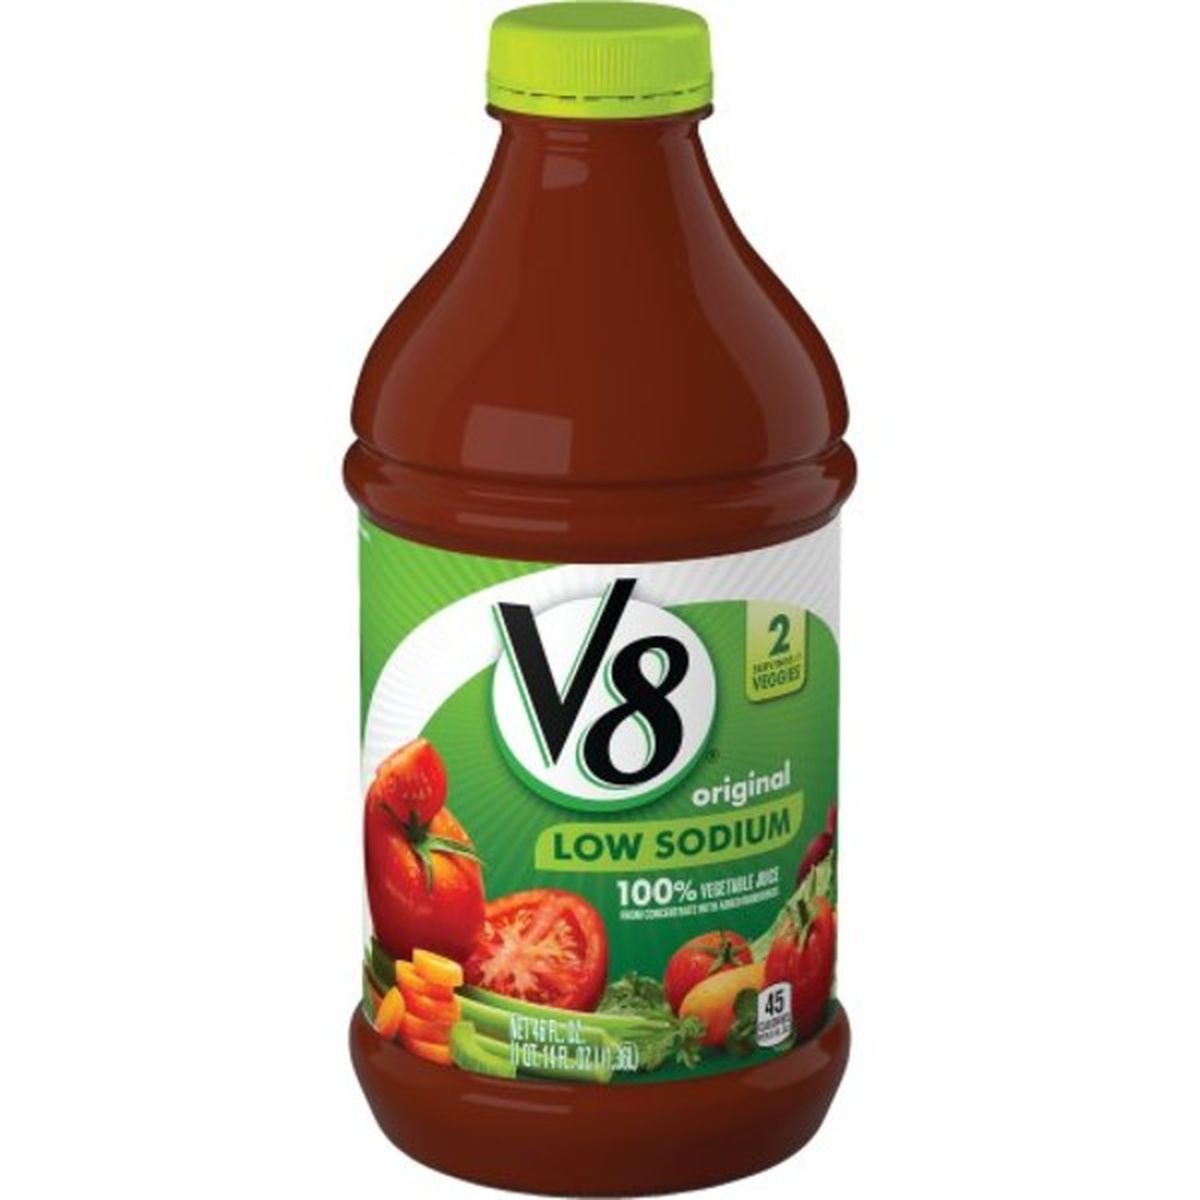 Calories in V8s 100% Vegetable Juice 100% Vegetable Juice 100% Vegetable Juice, Low Sodium